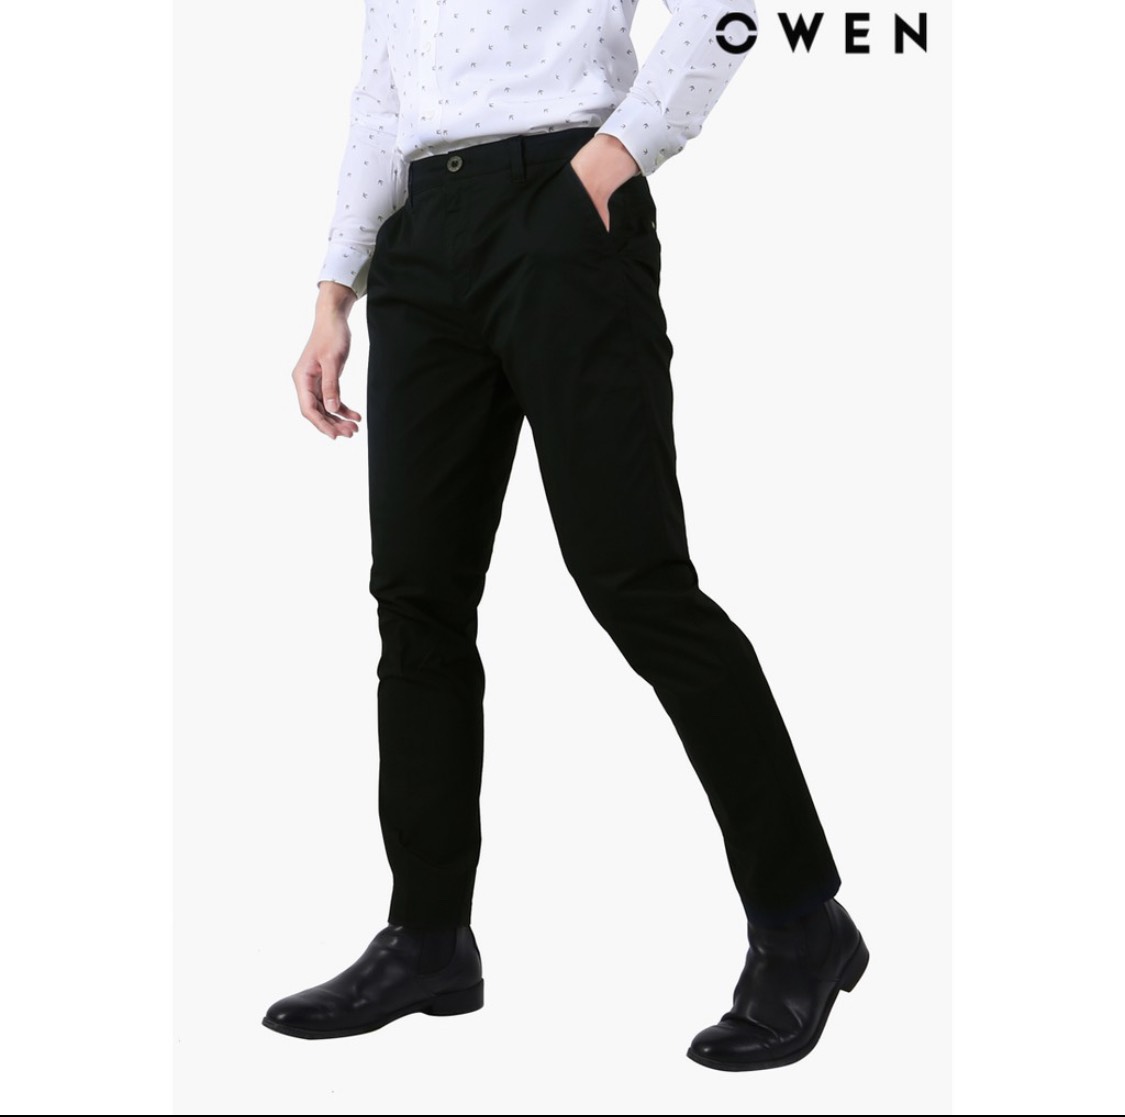 OWEN - Quần kaki nam Owen chất thô giấy mềm mại co dãn màu đen 21993/22006